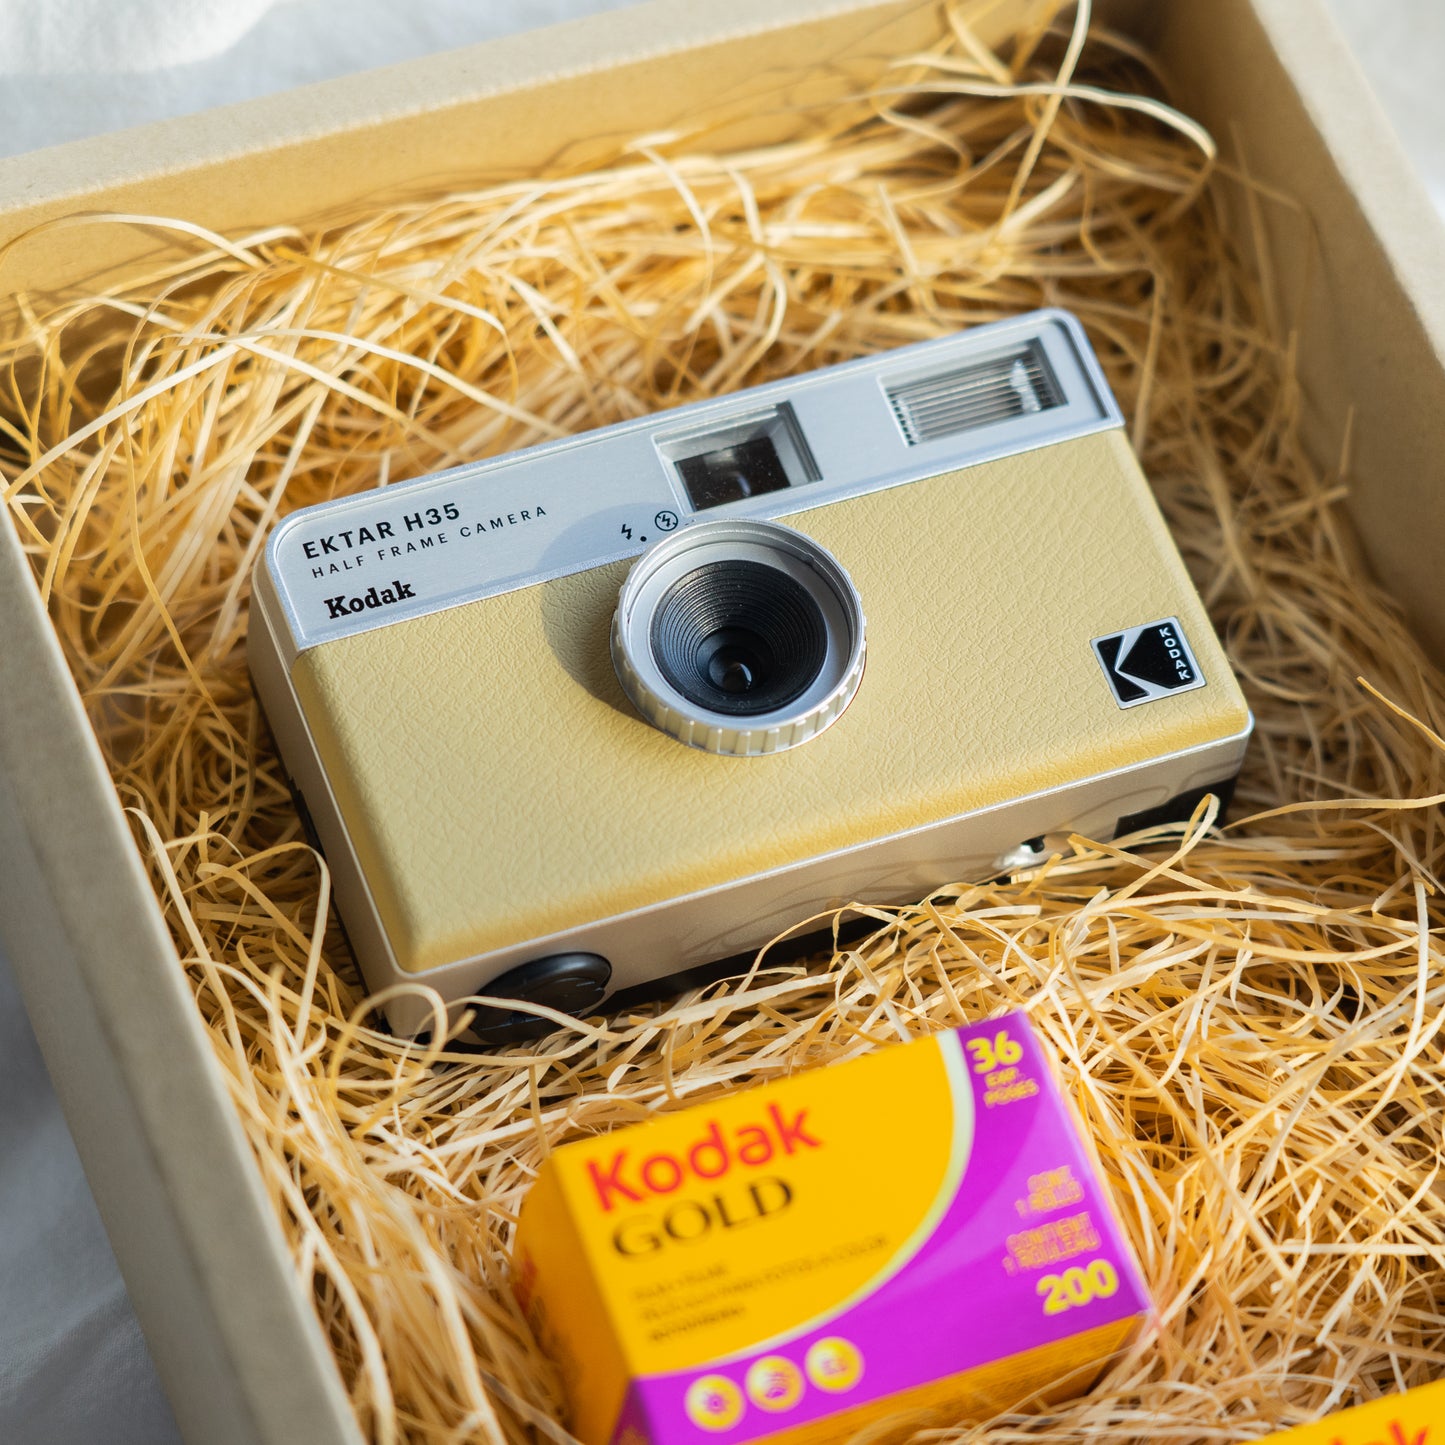 【ギフトセット】 Kodak EKTAR H35 サンド